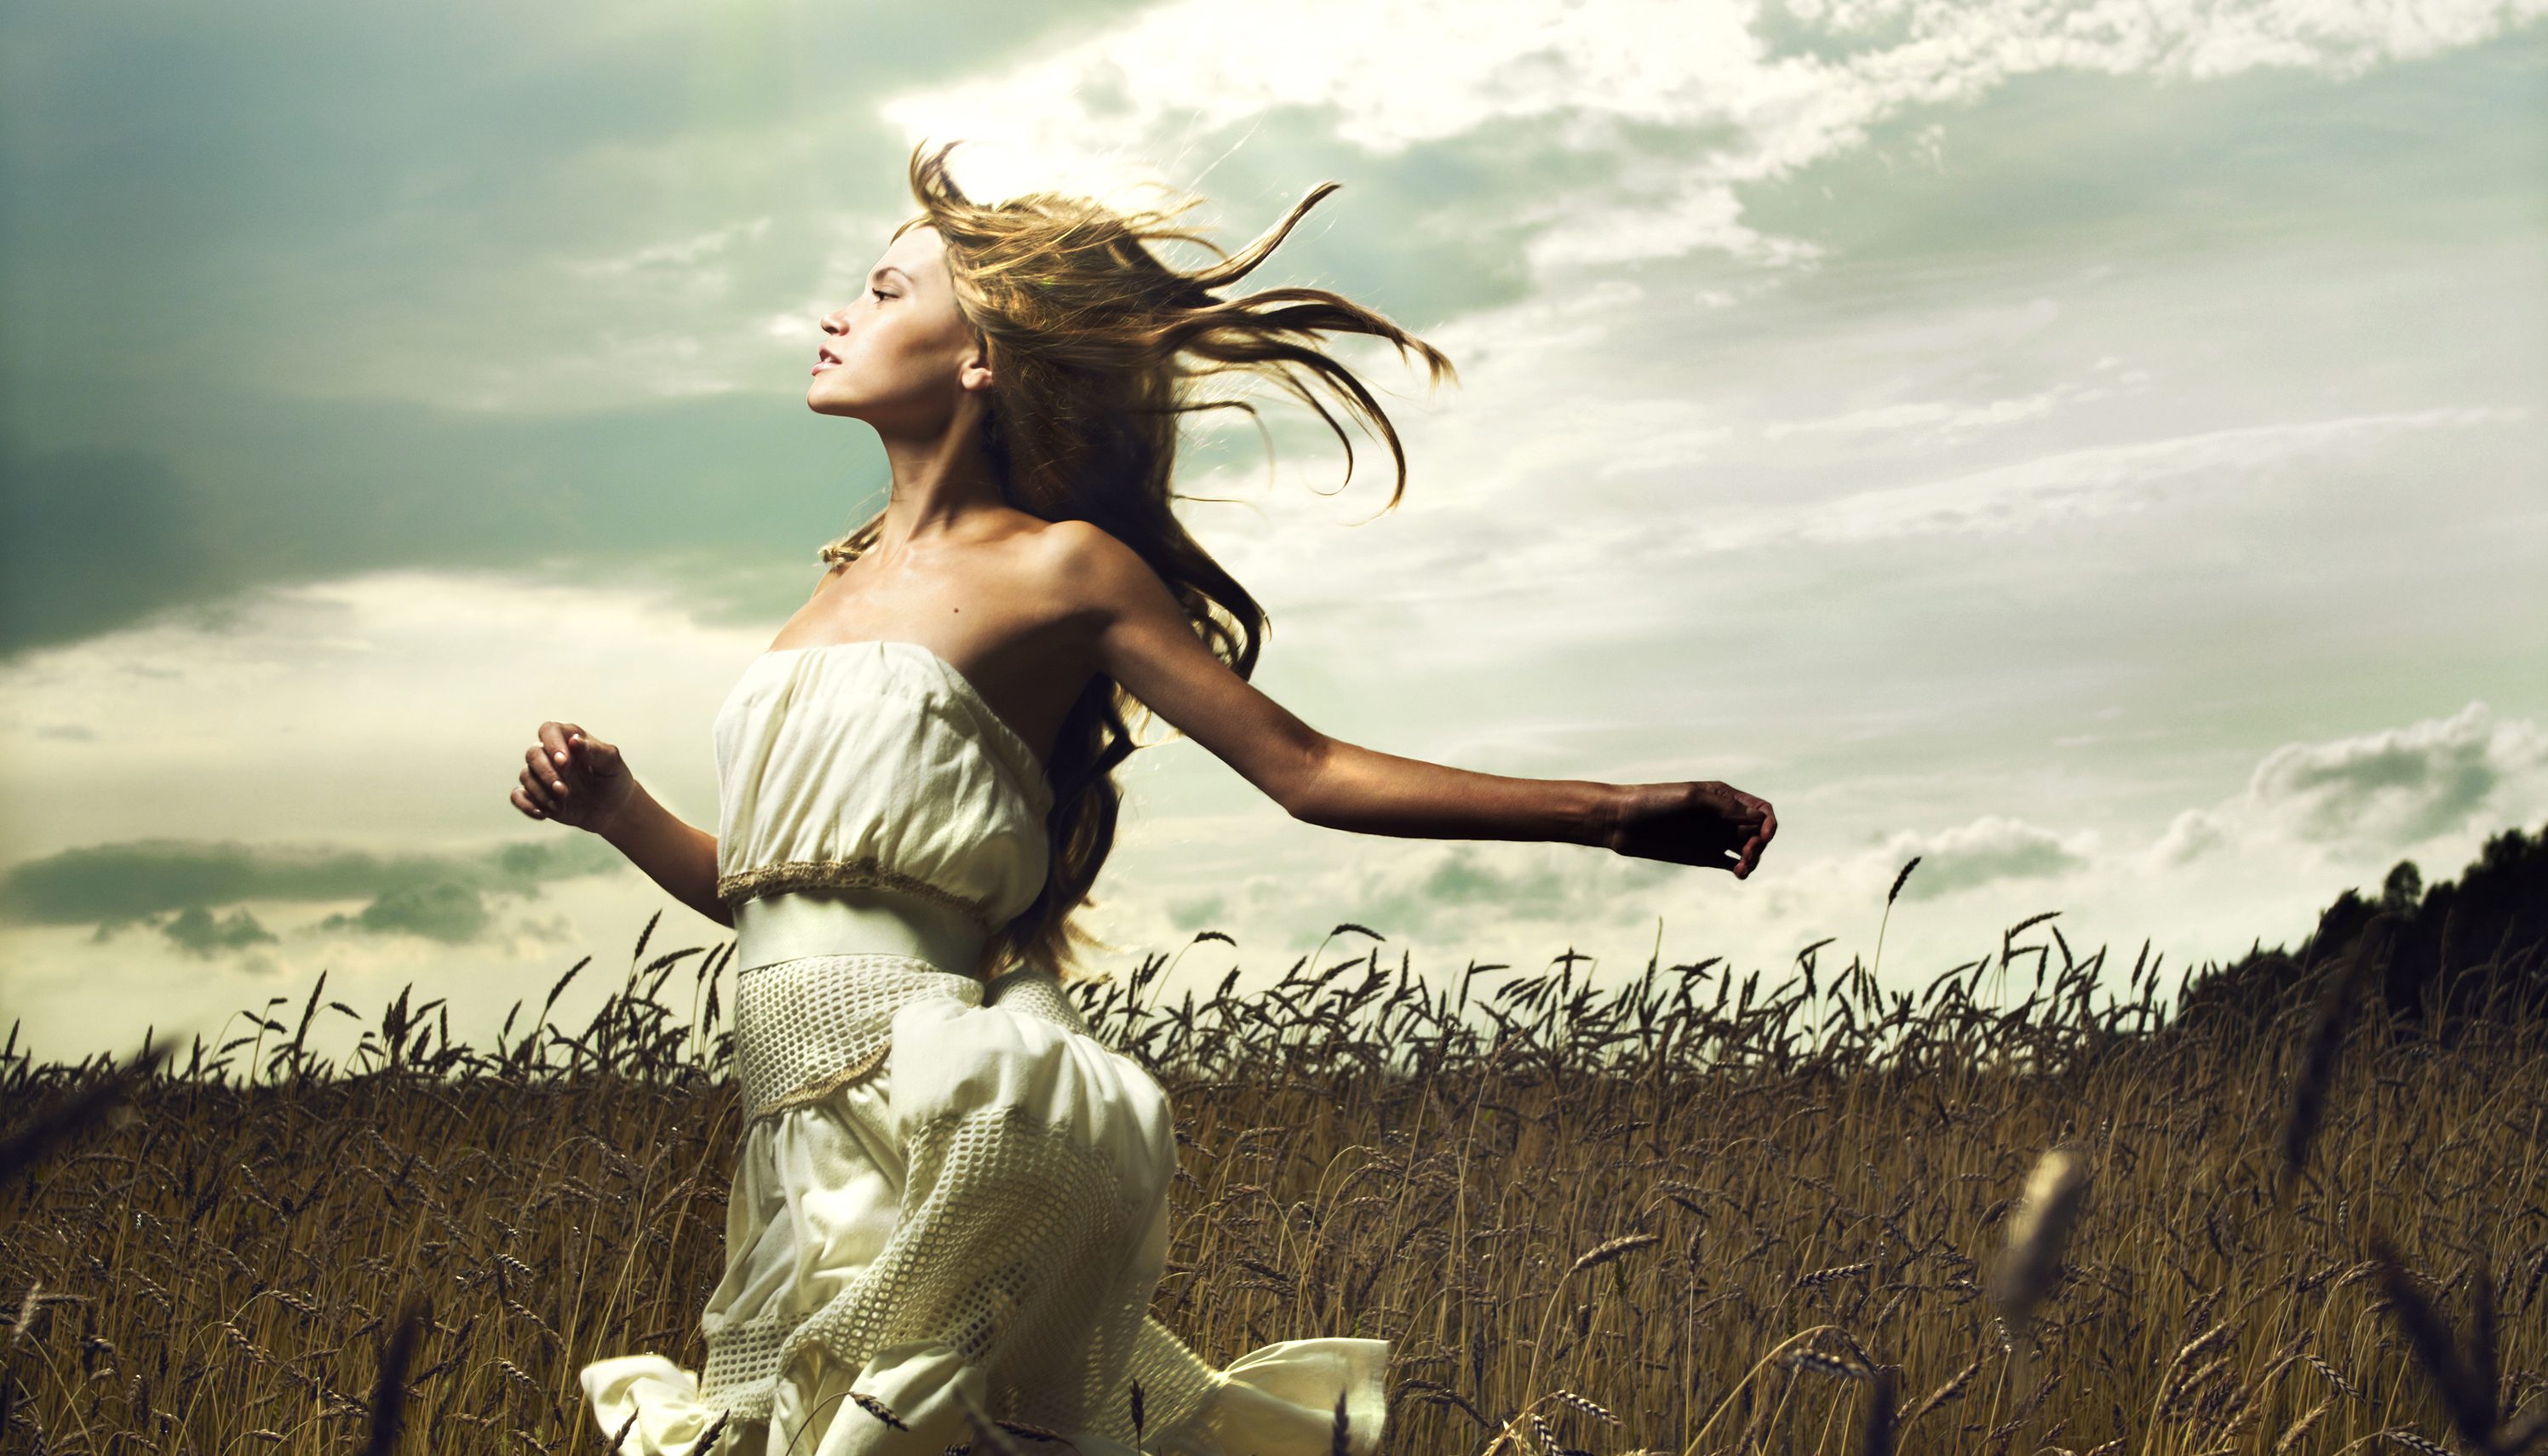 Двое против ветра. Девушка убегает. Девушка бежит в поле. Девушка в платье убегает. Девушка бежит в платье.